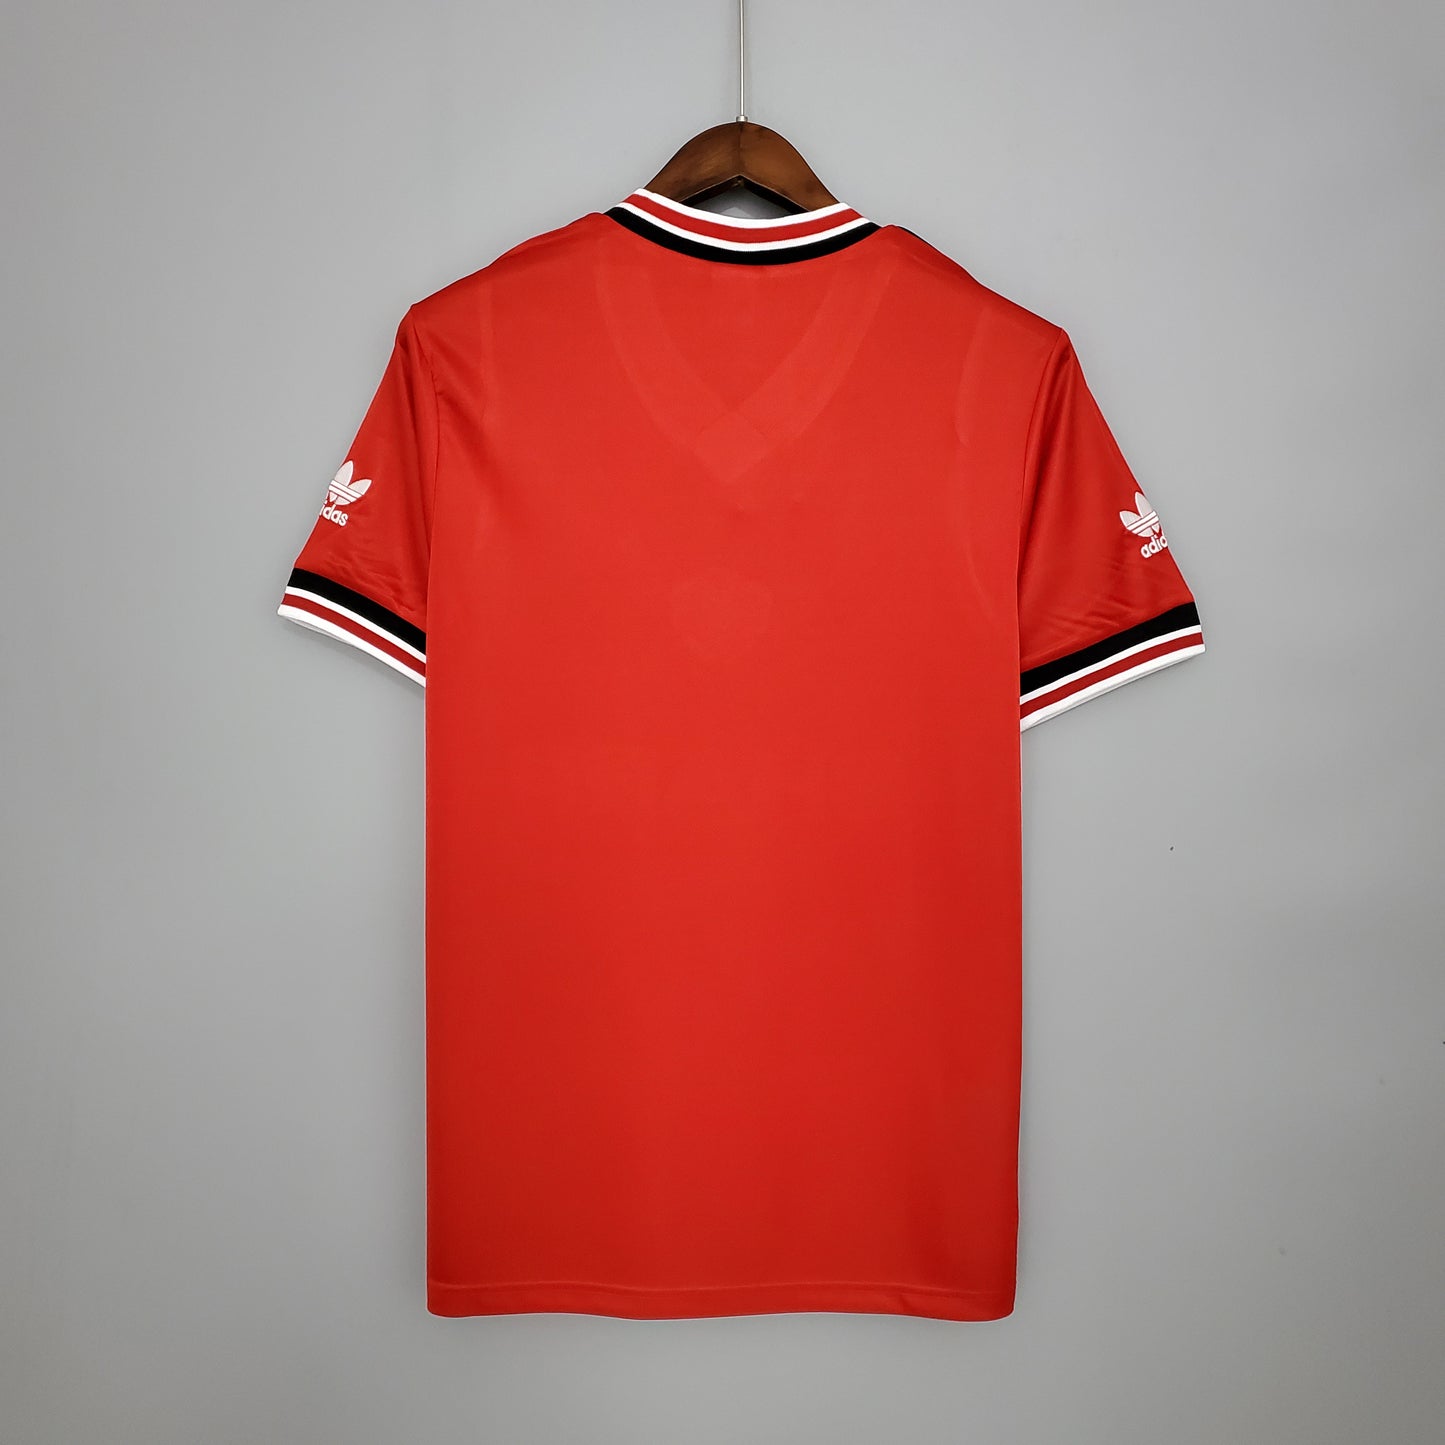 Retro Manchester United 85/86 Home Kit